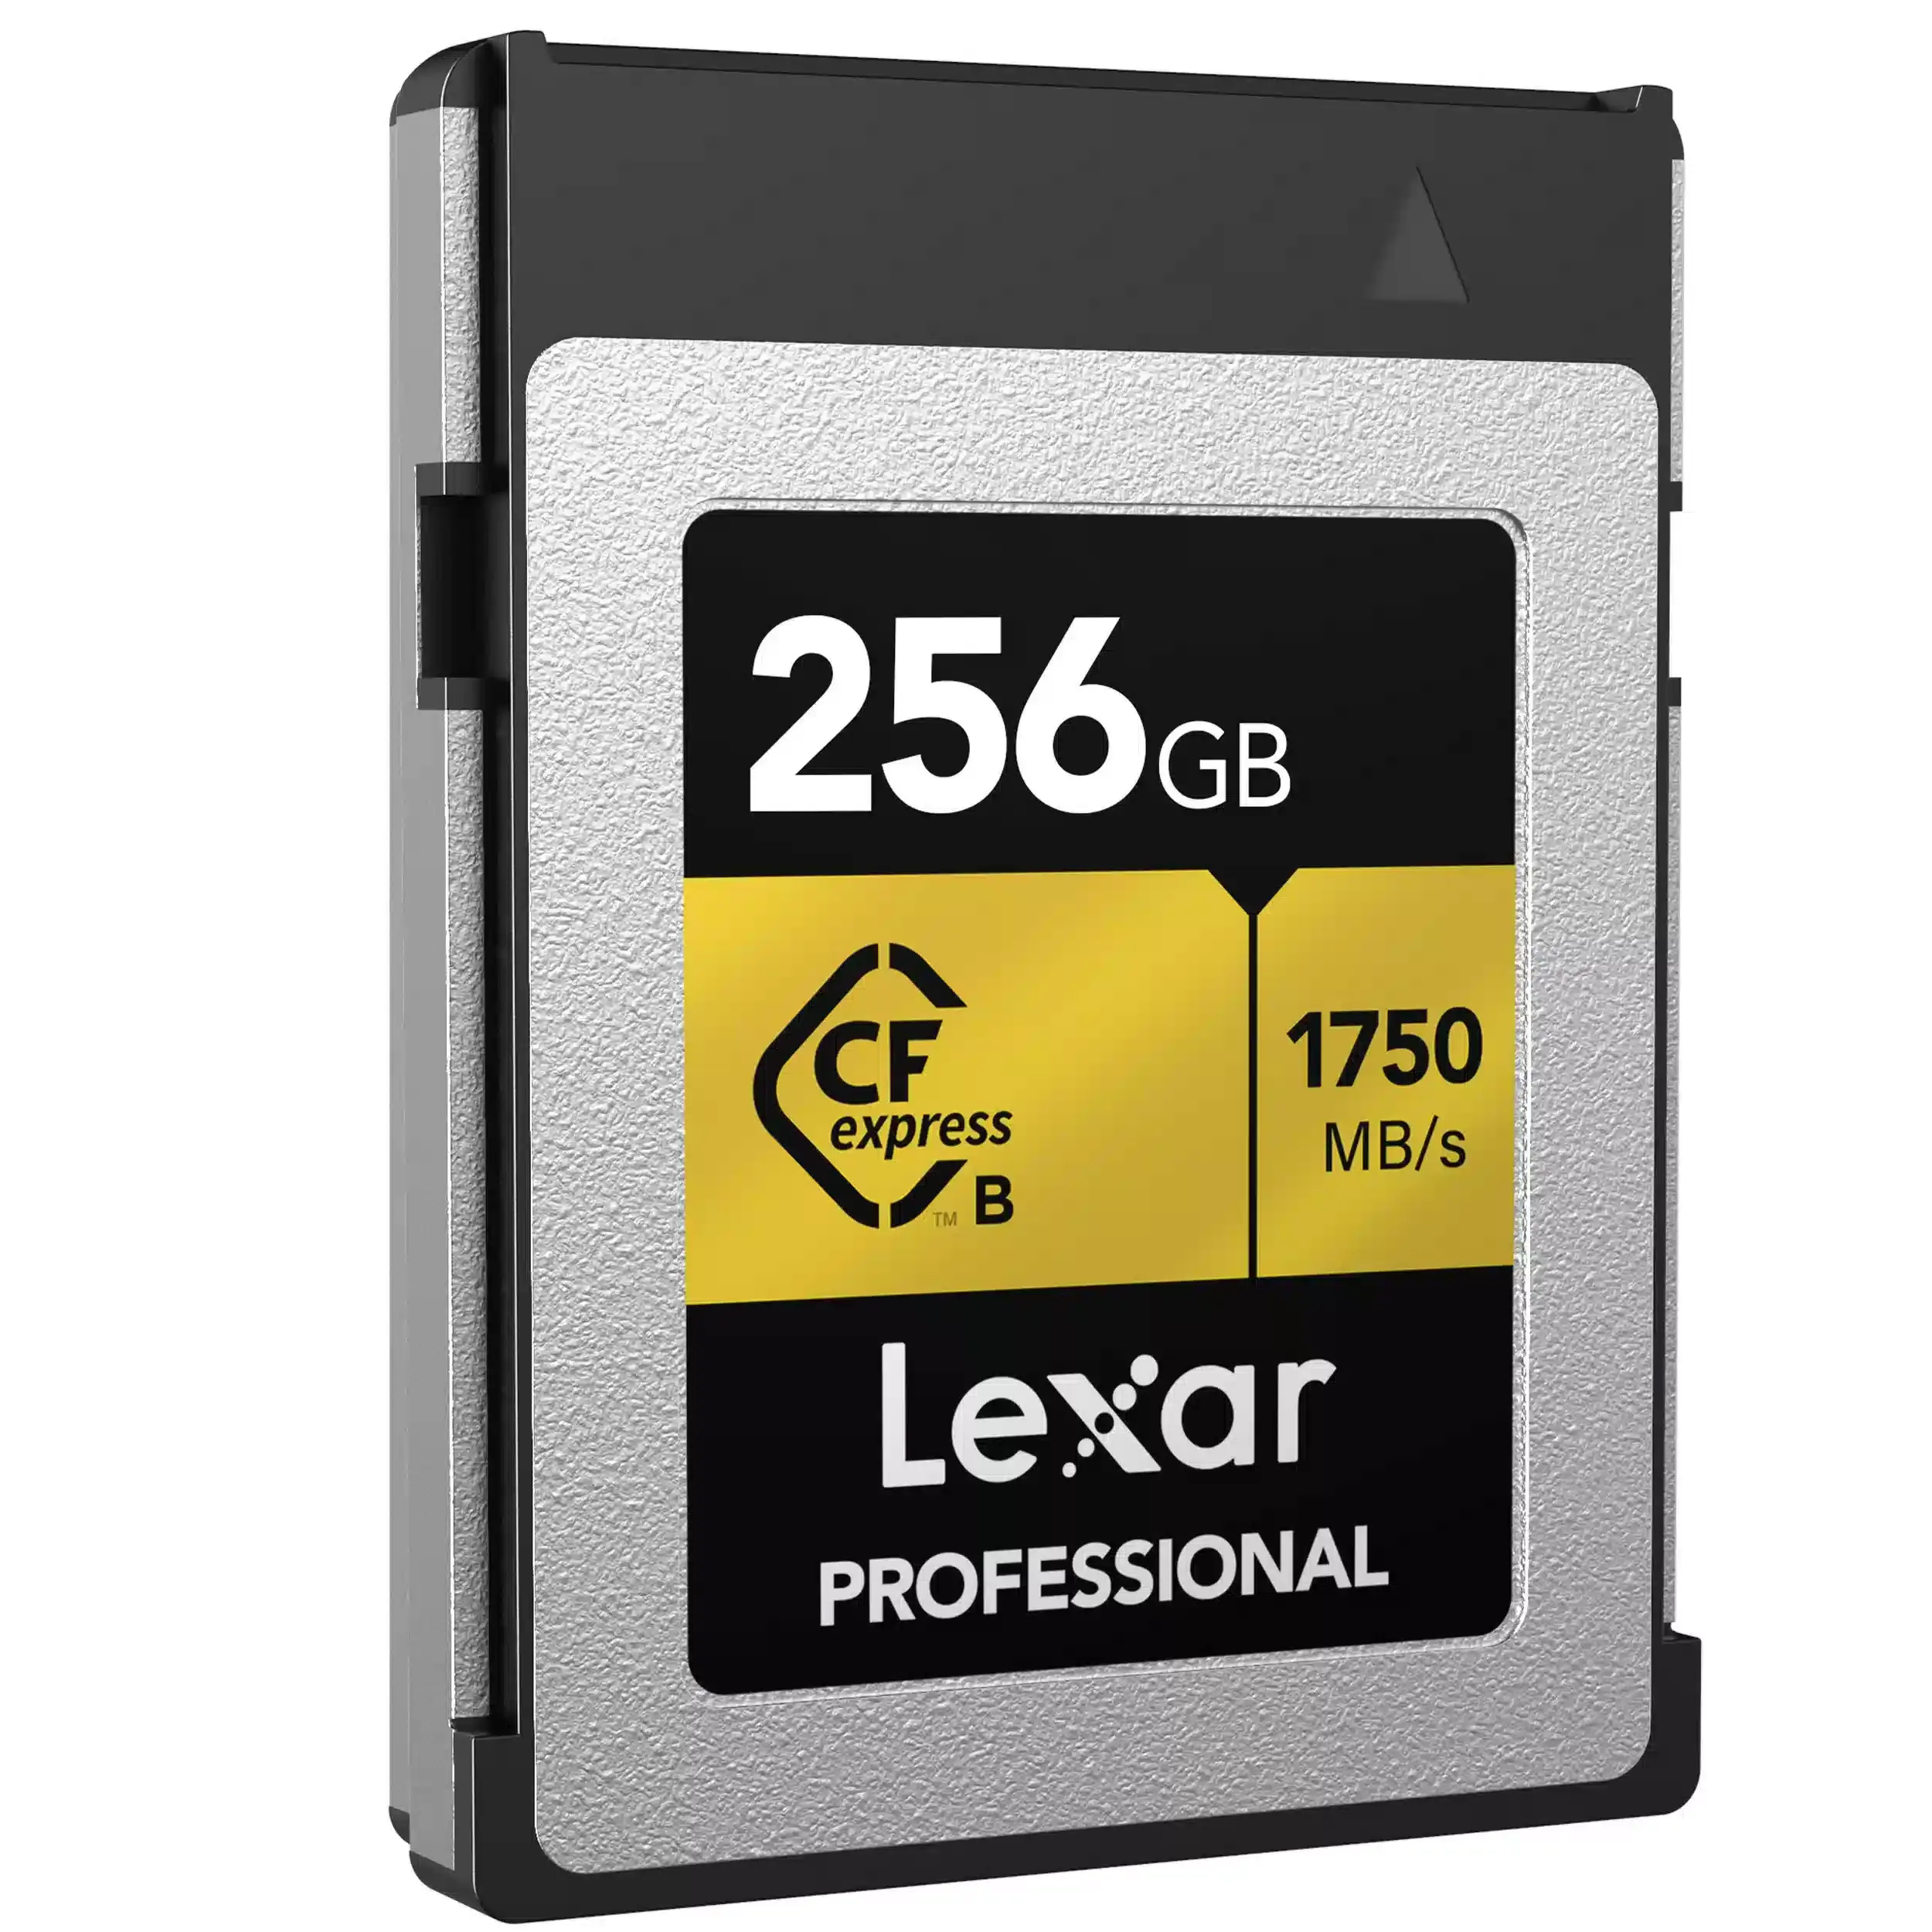 כרטיס זיכרון Lexar Professional 256GB CFexpress™ Type B